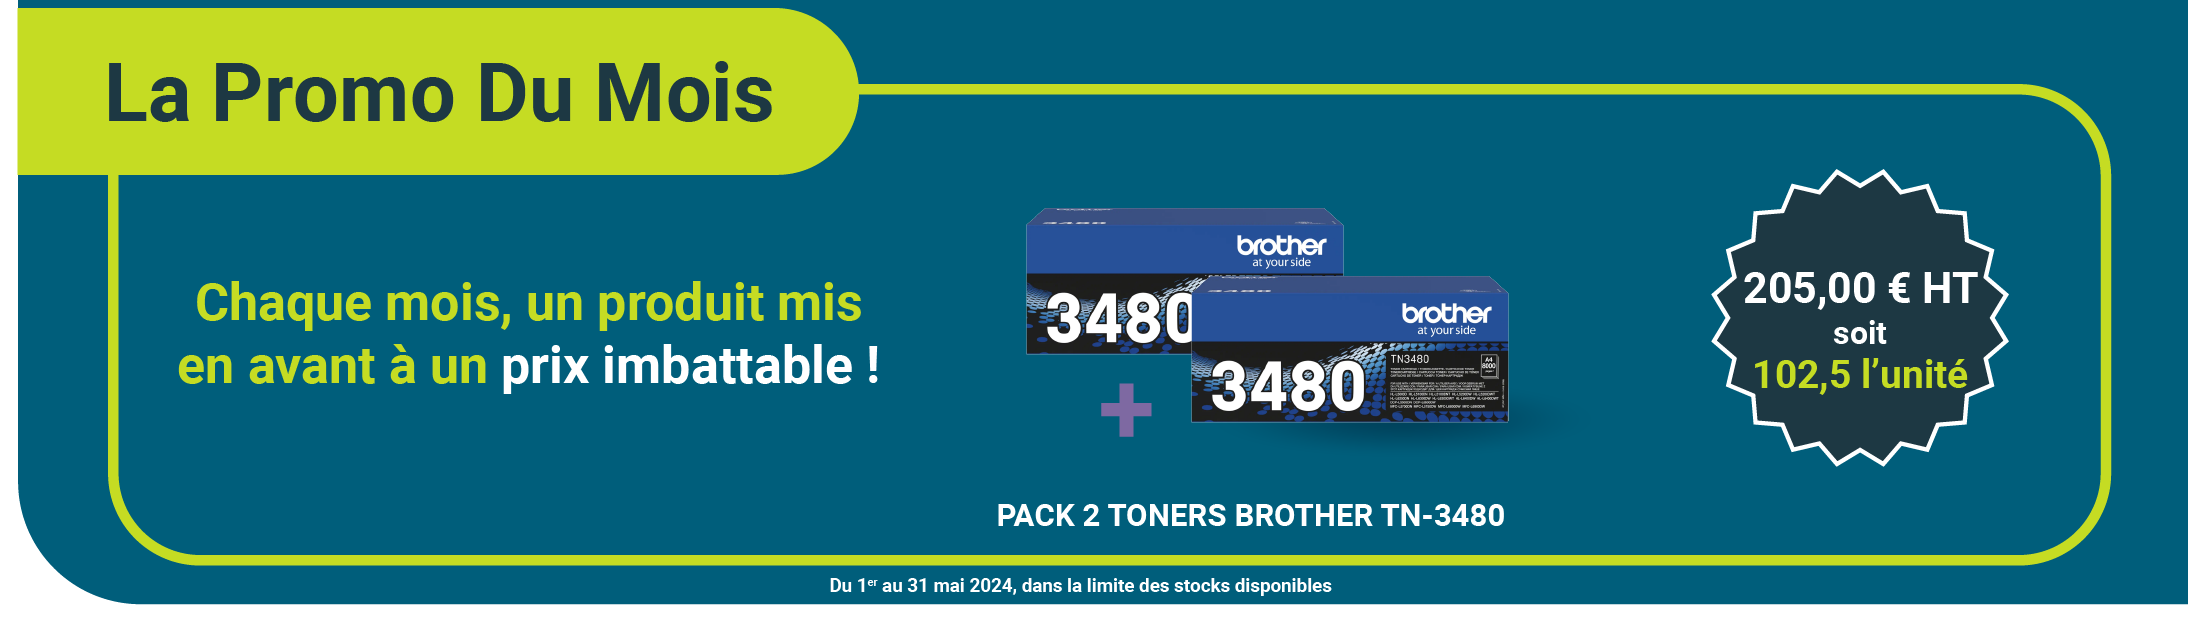 <p>Pack 2 toners noirs BROTHER TN-3480 au prix de 205.00 €HT !</p>